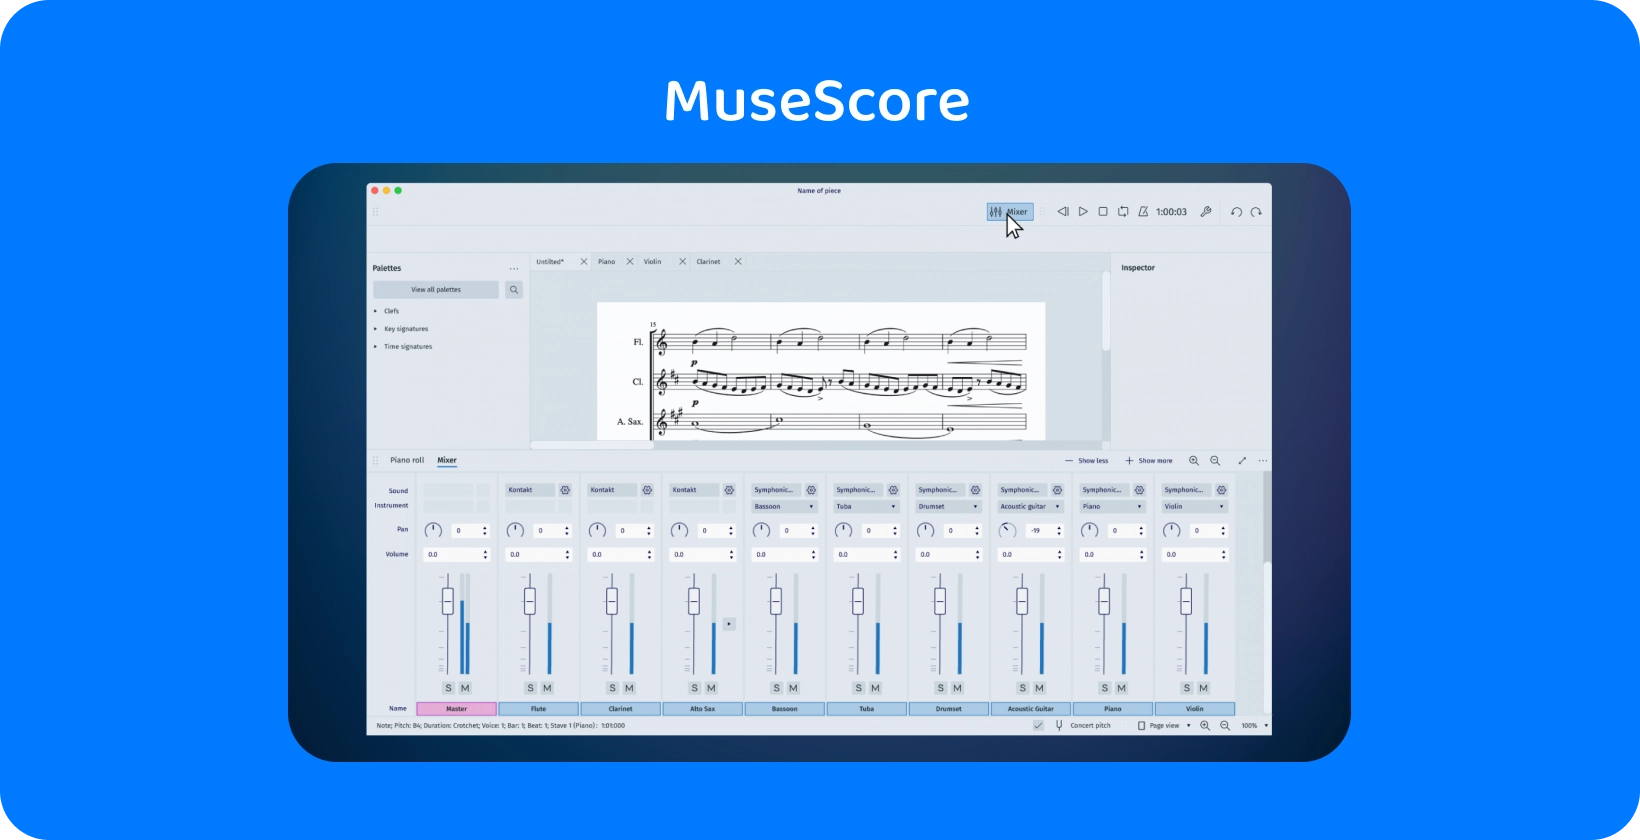 واجهة MuseScore تعرض أداة الخلاط للنسخ الصوتي ، وهي ضرورية لمنشئي الموسيقى.